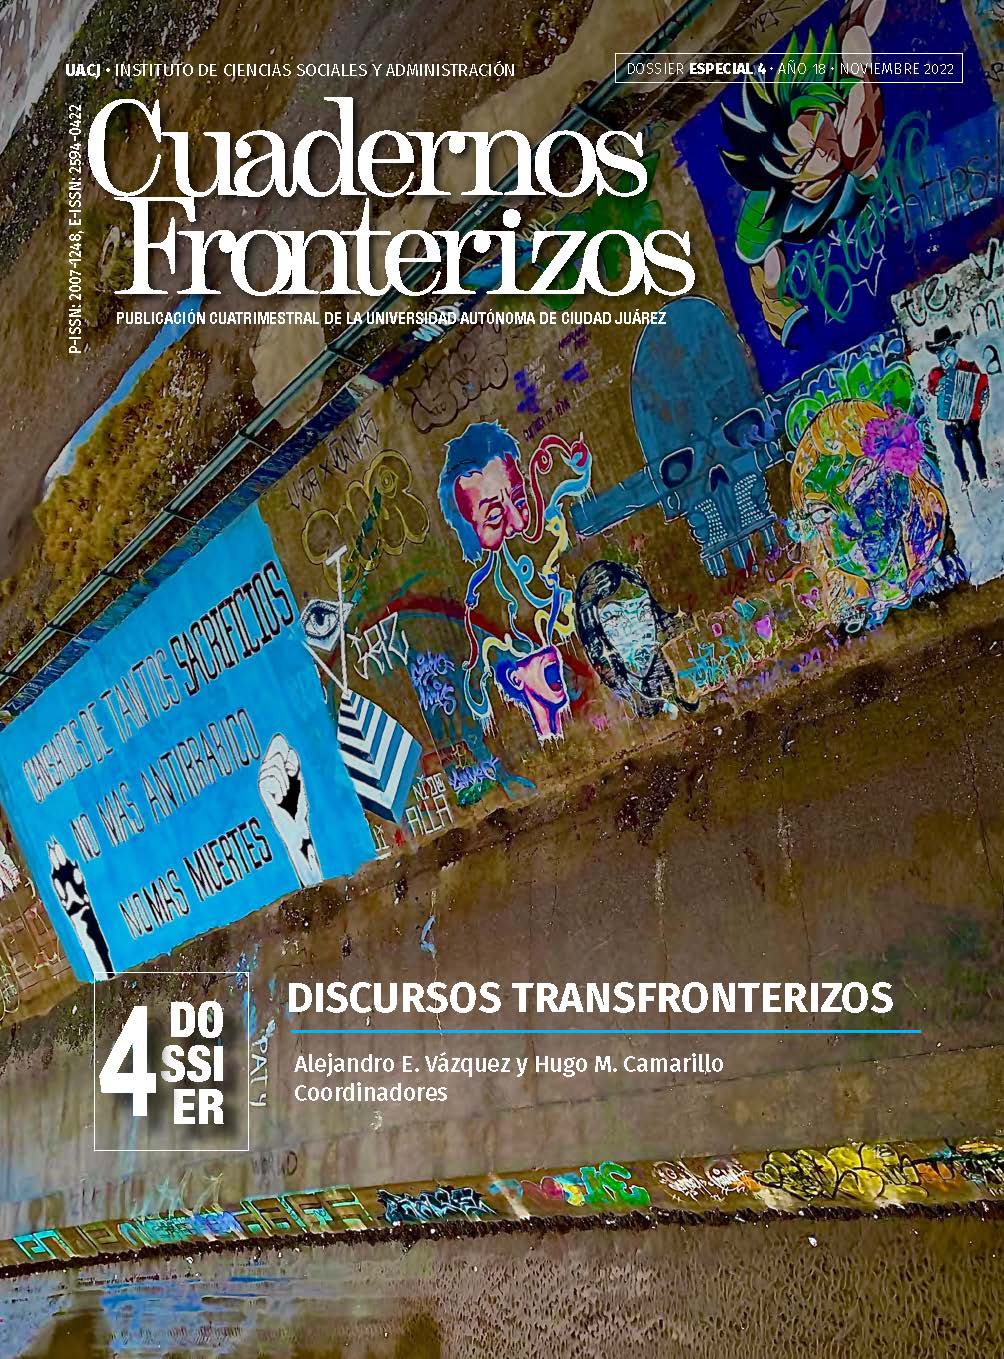 					Ver Cuarto Dossier Especial: Discursos transfronterizos
				